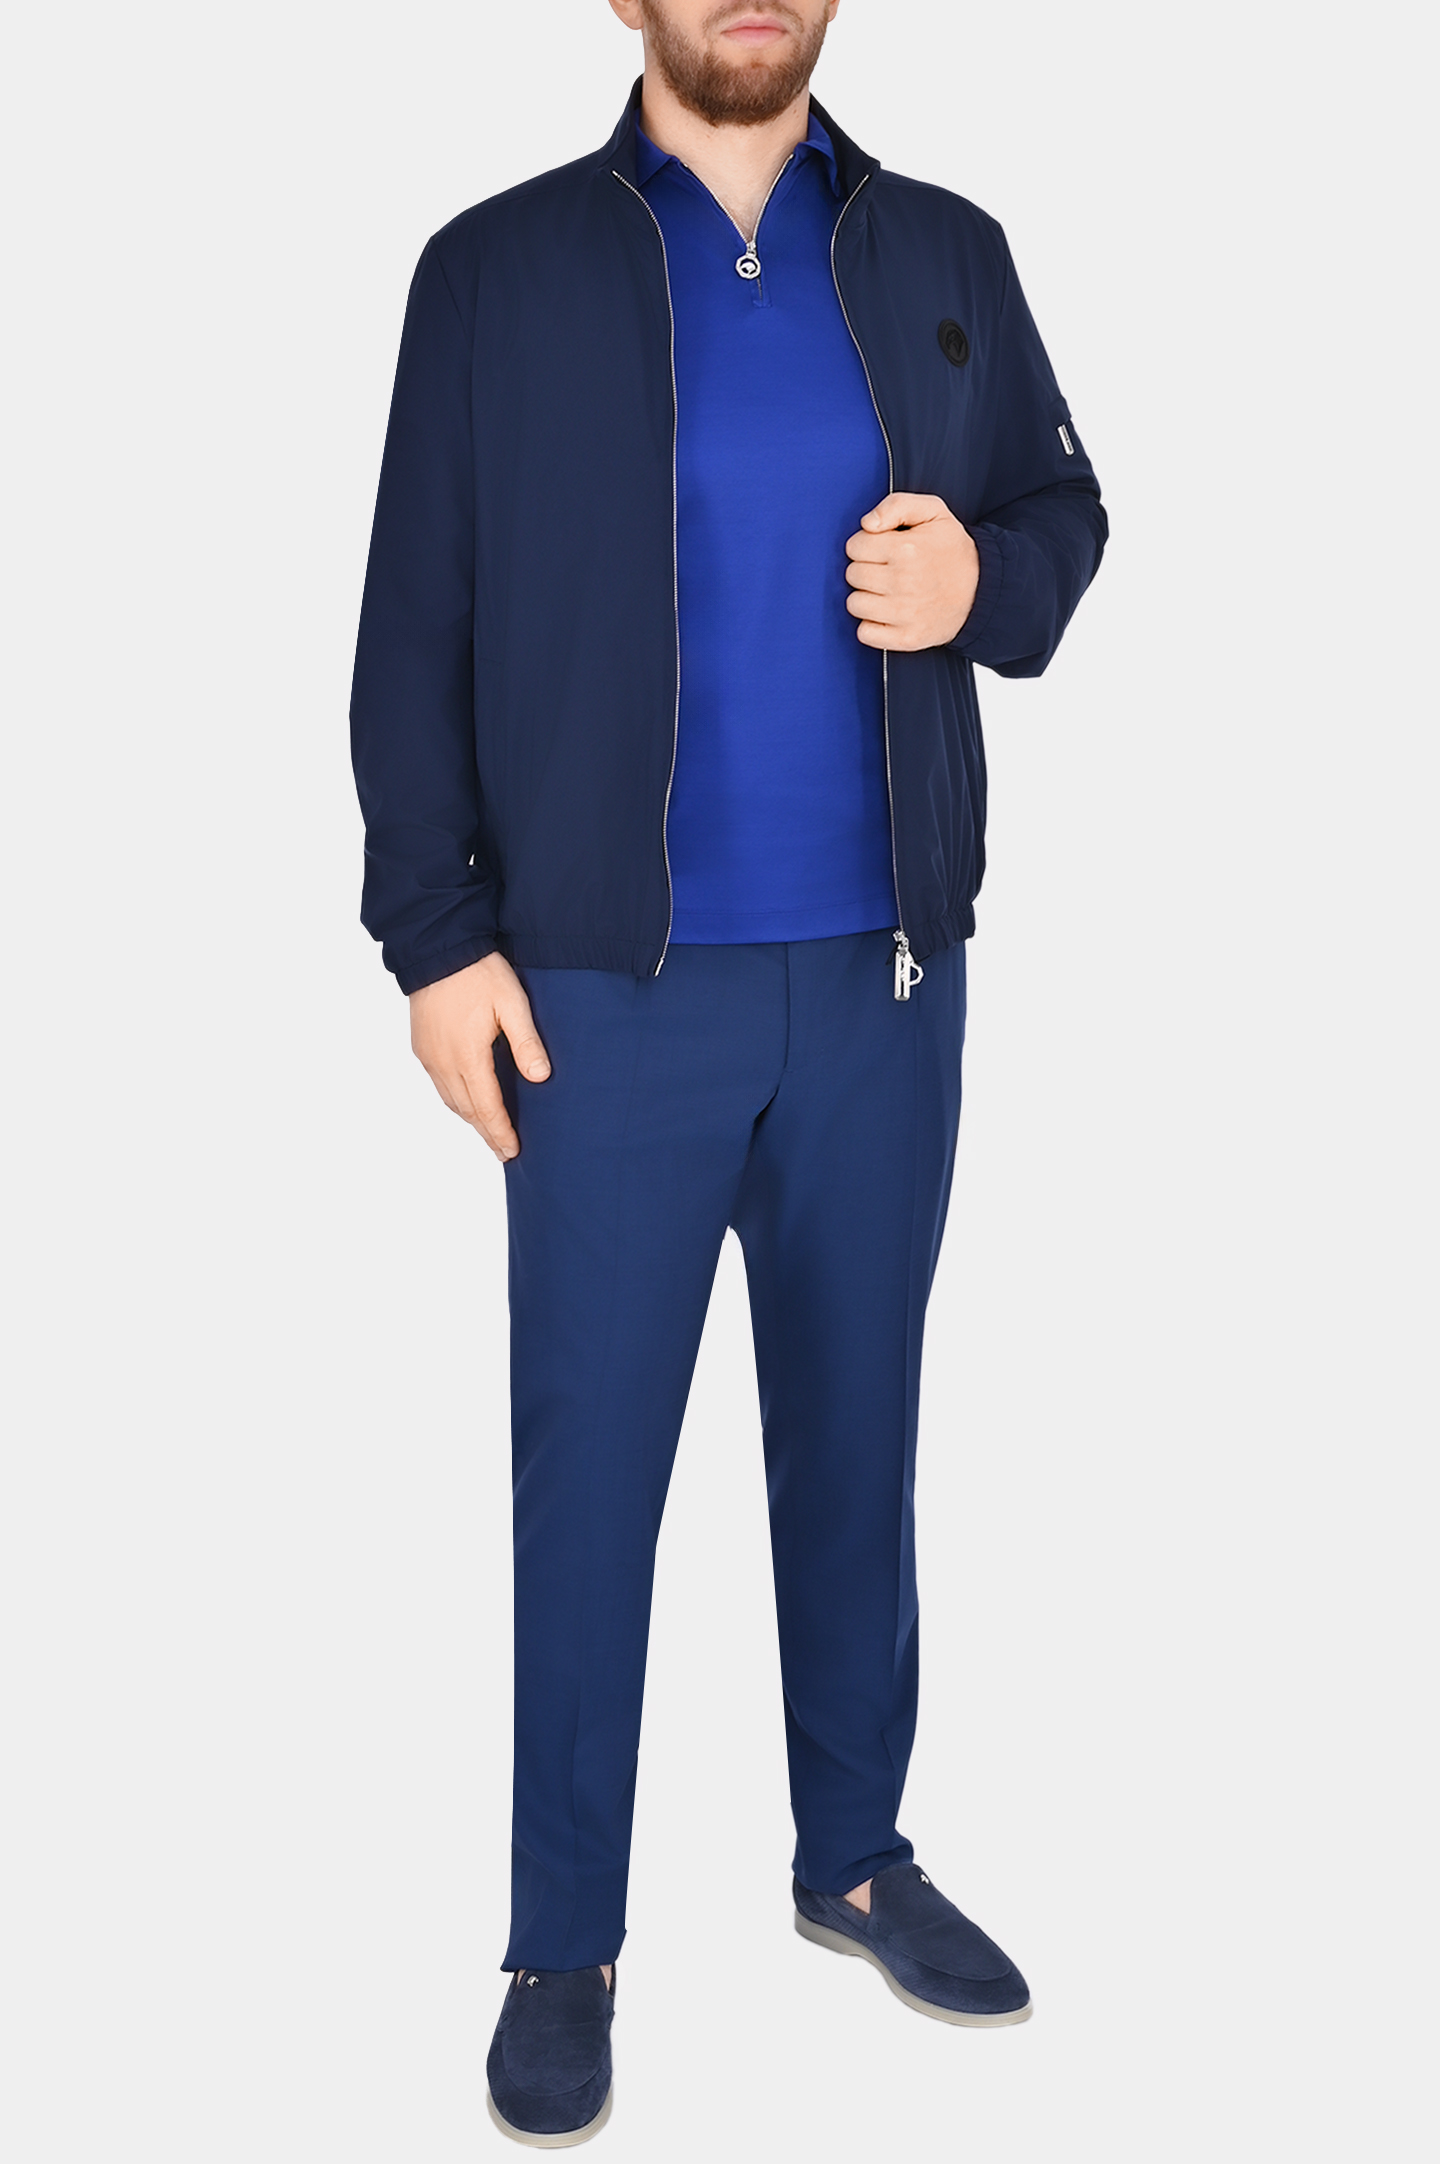 Куртка из полиэстера с логотипом STEFANO RICCI M6J4100010 PL001H/1/SAC64, цвет: Темно-синий, Мужской